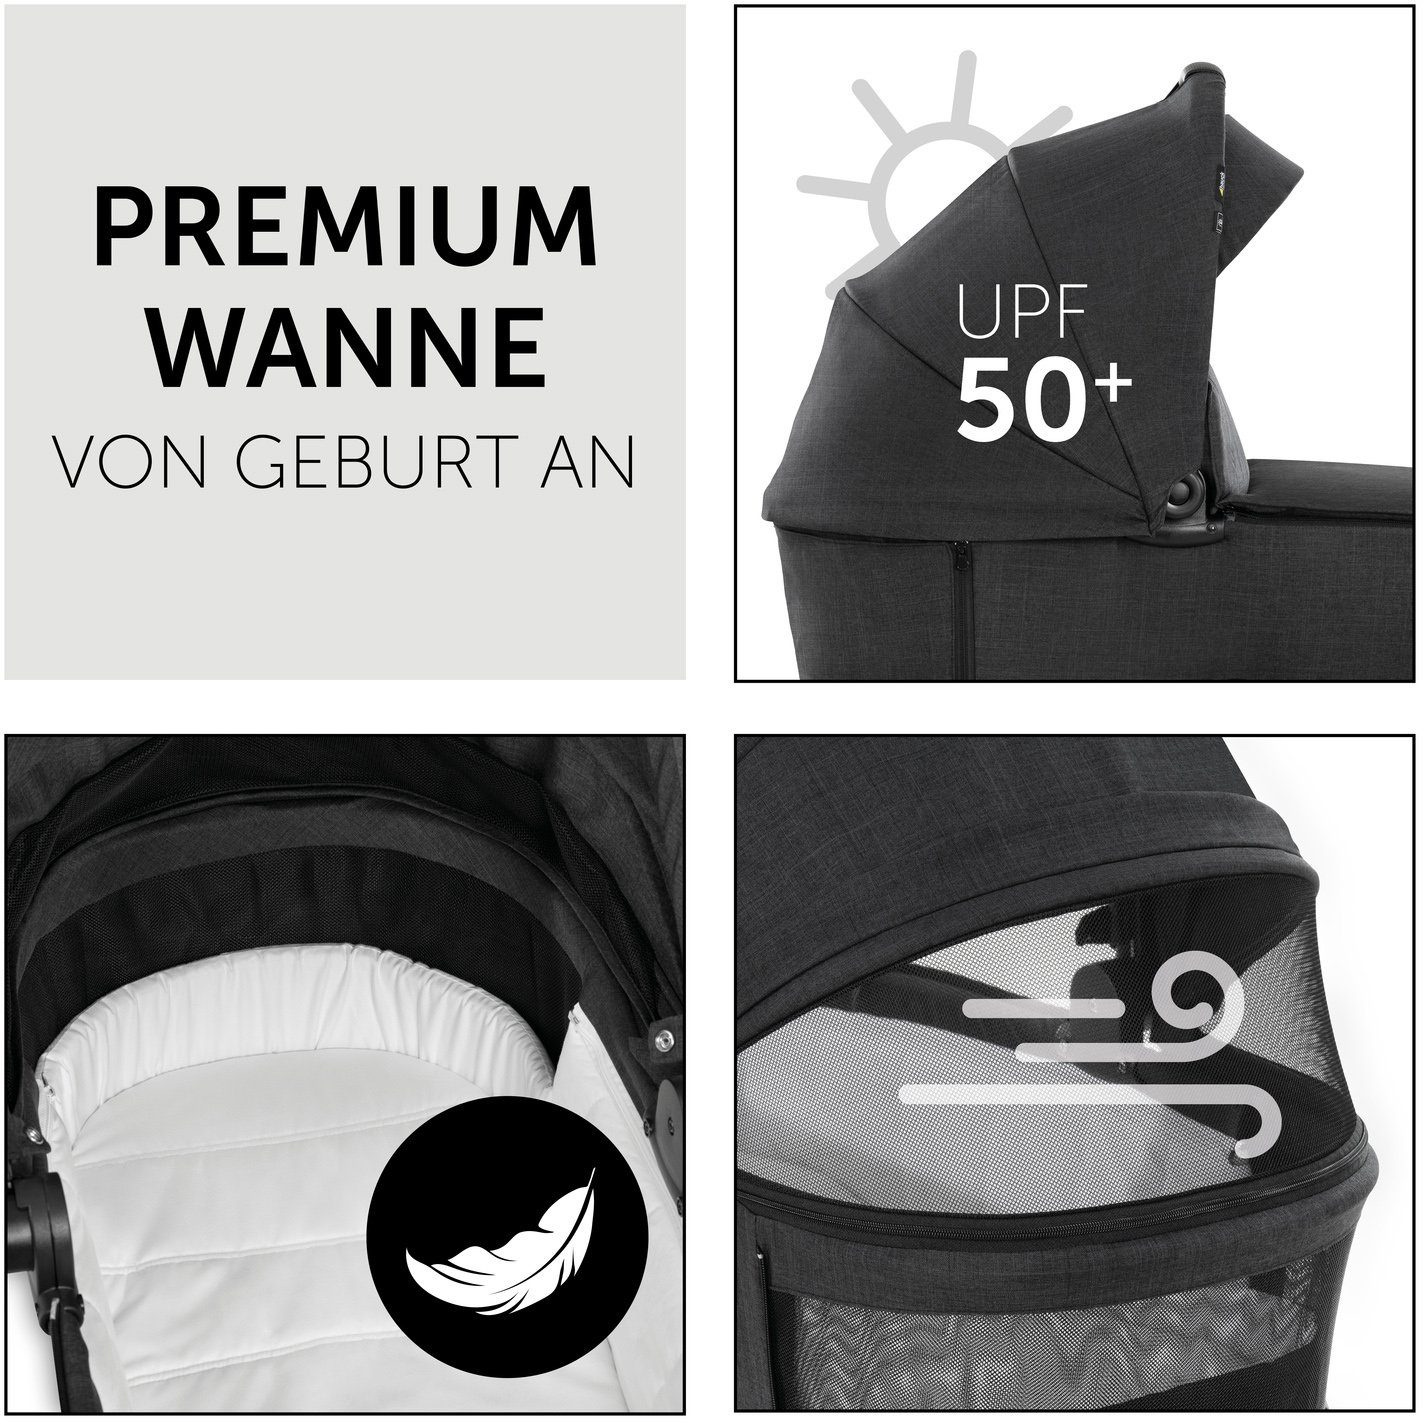 Sportwagenaufsatz Babywanne und Vision black/black, (3-tlg), mit X, Kombi-Kinderwagen Hauck